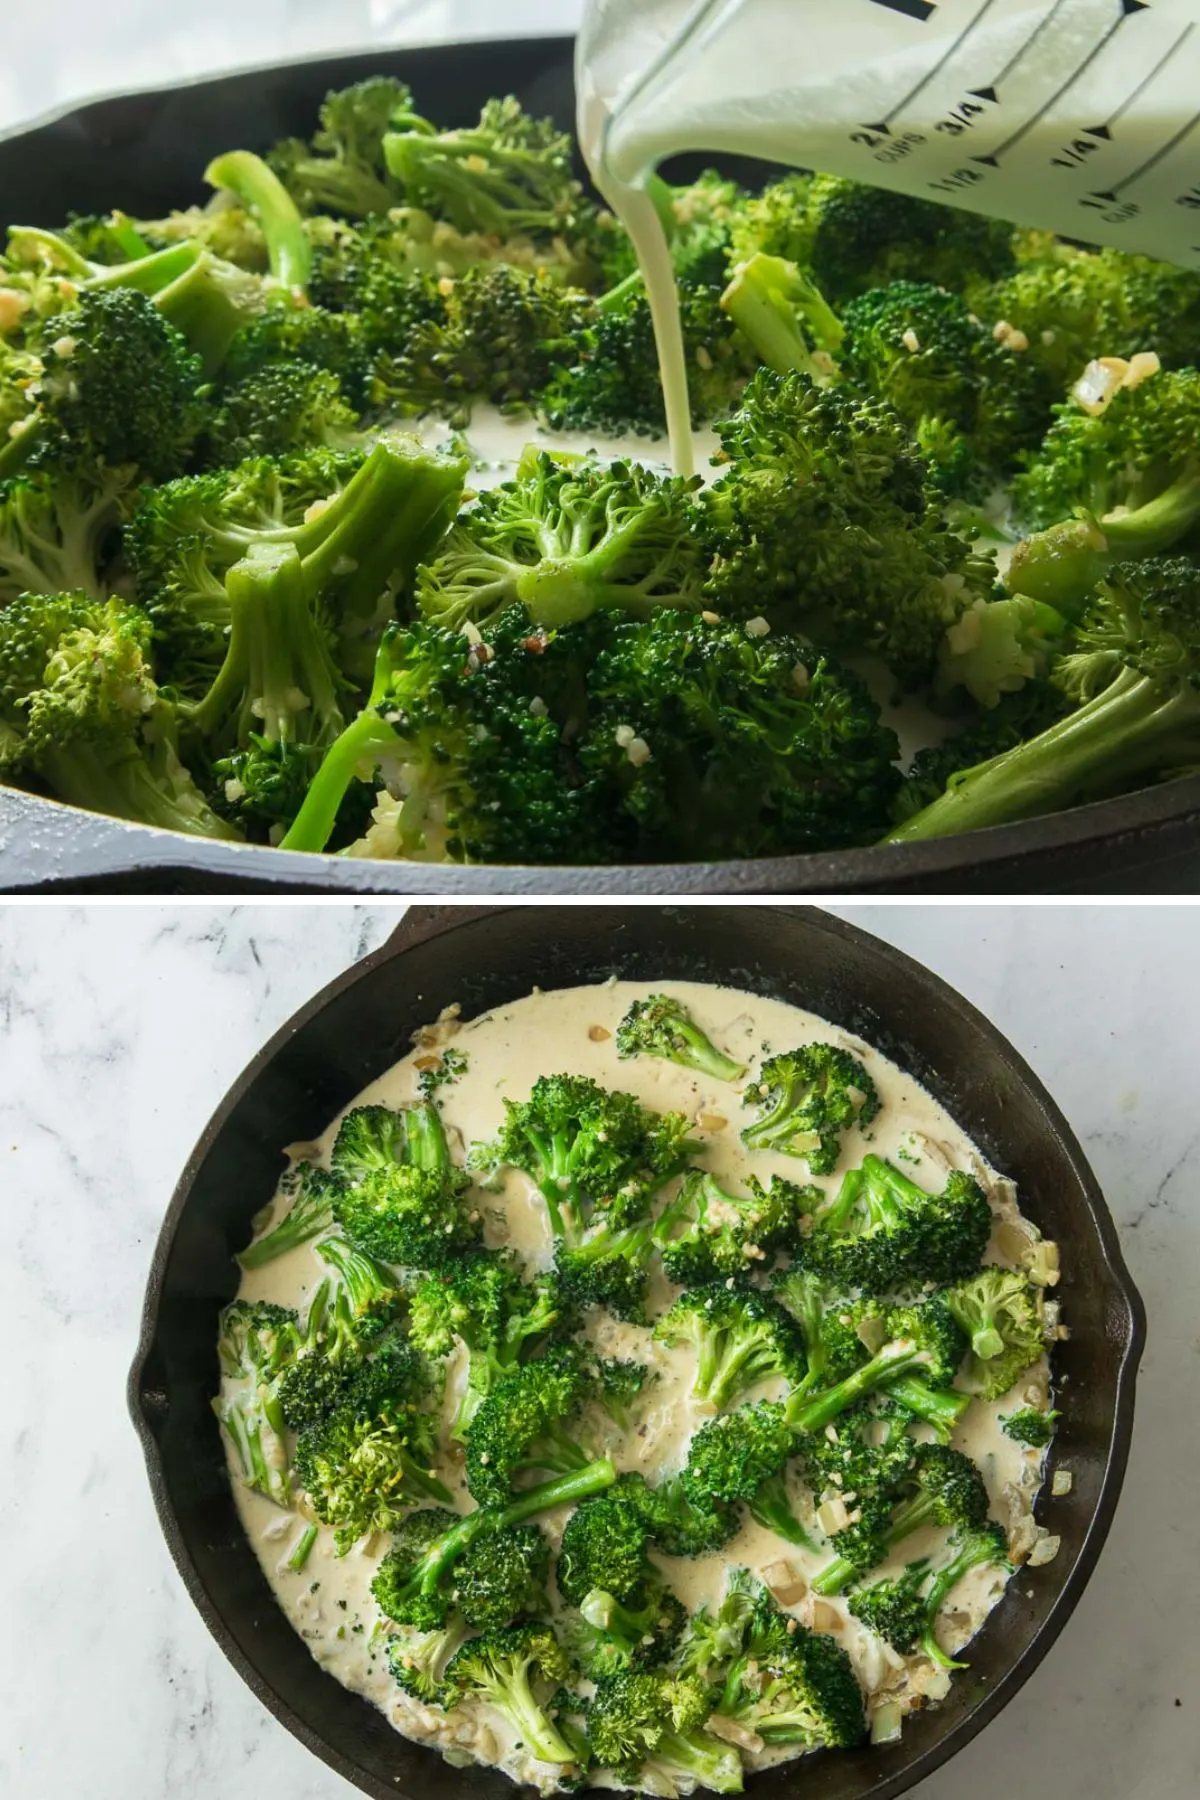 Adding heavy cream to broccoli in the skillet